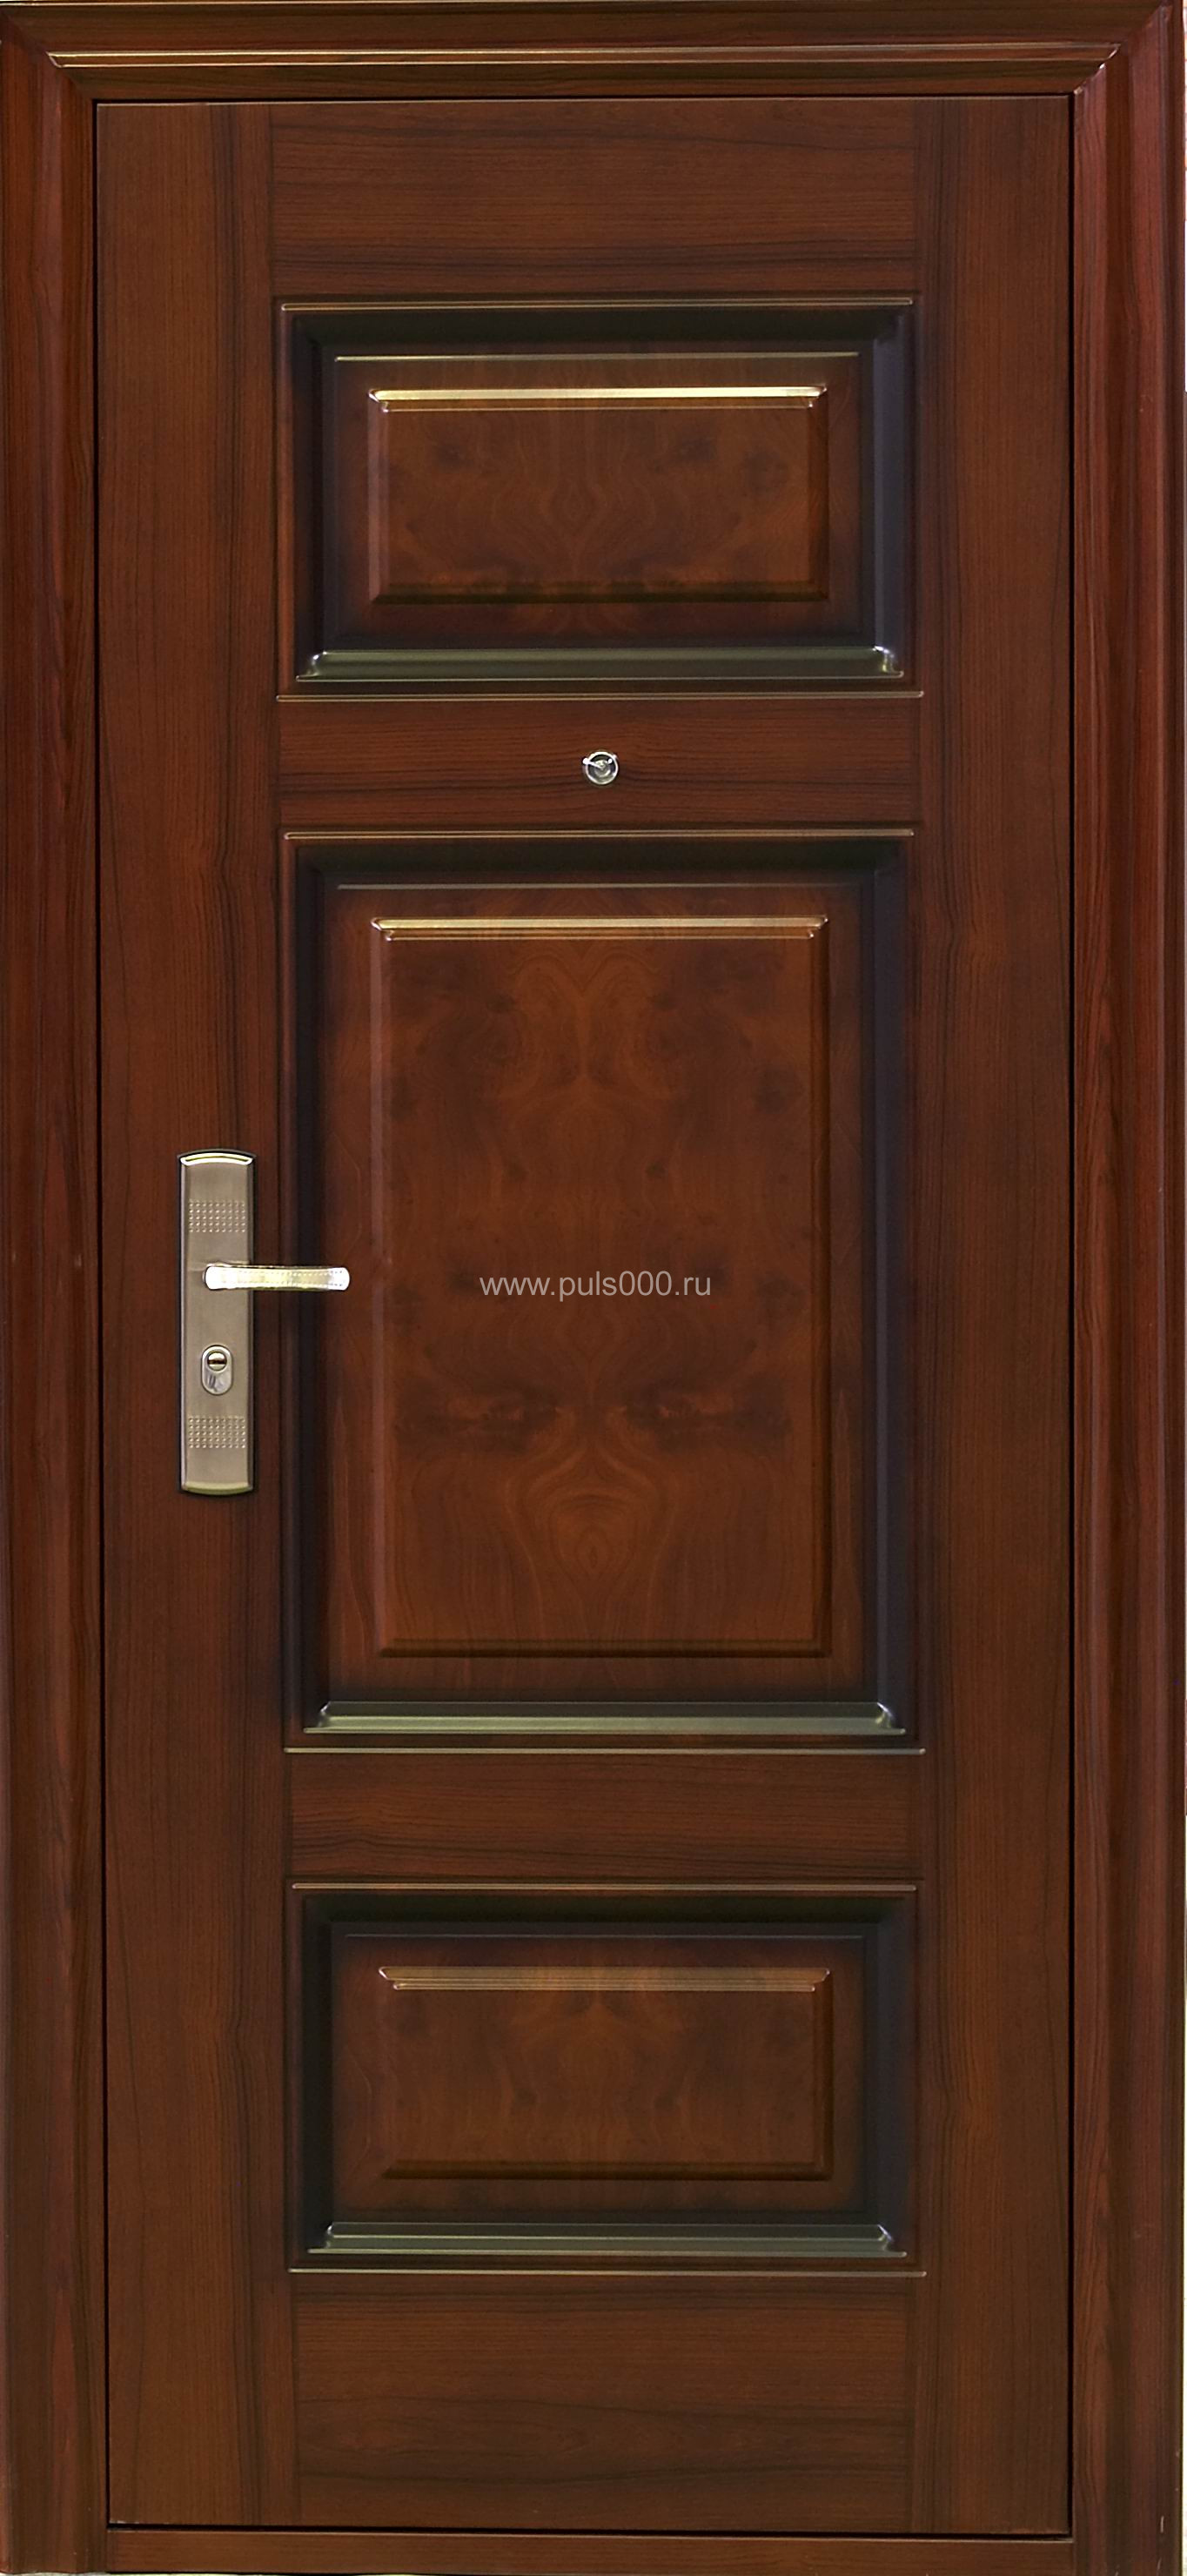 Металлическая дверь МДФ и массив MDF-1790, цена 48 600  руб.